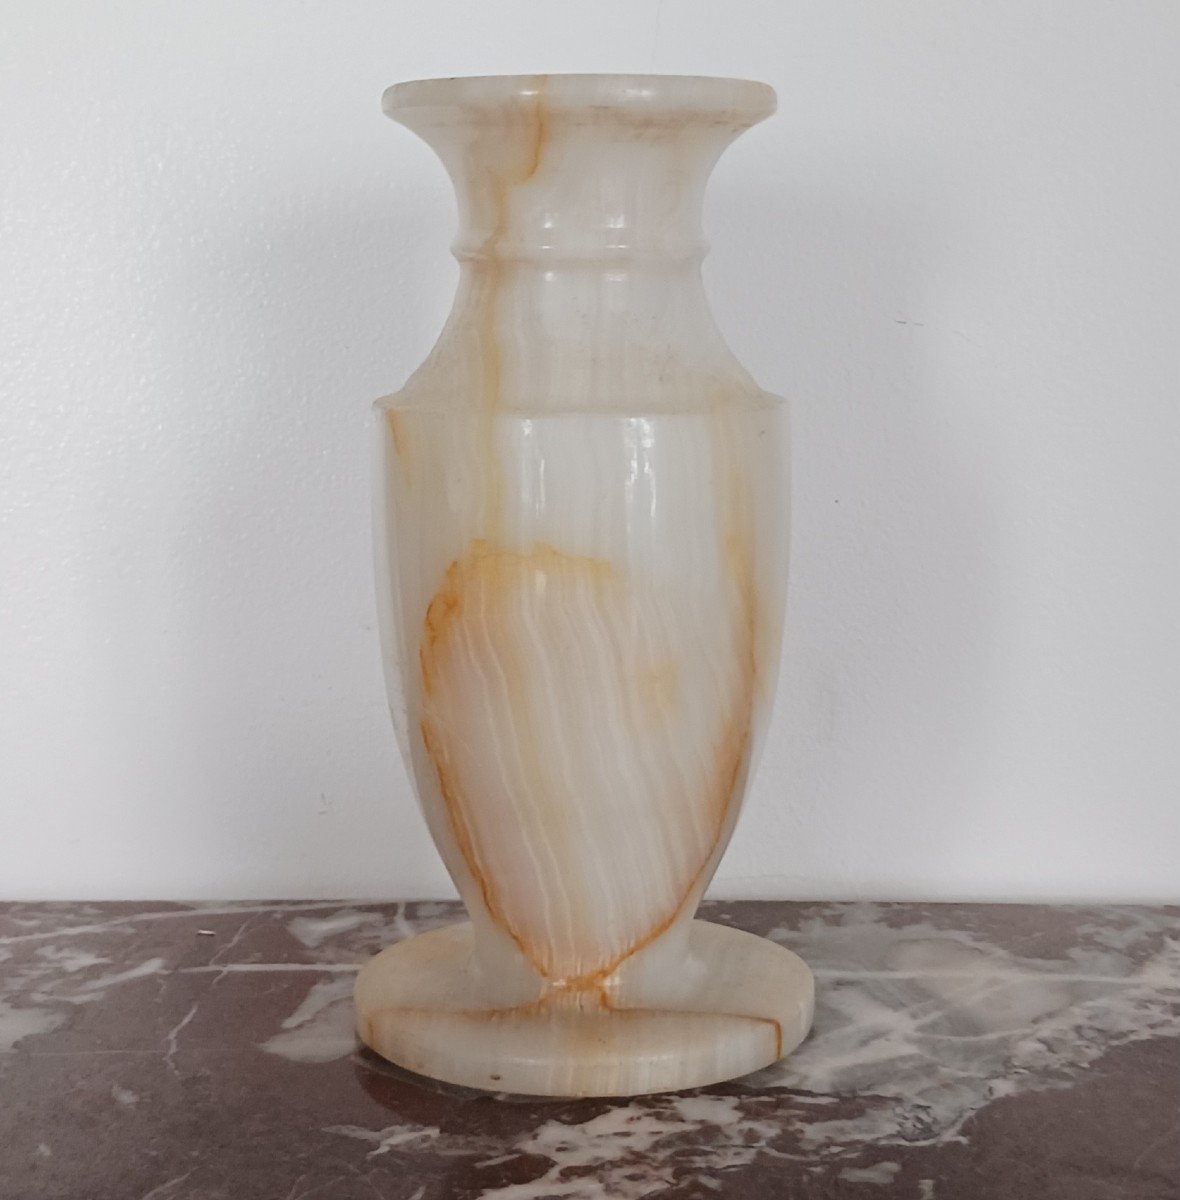 Interesting Baluster Vase - Turned Banded Alabaster Or Onyx - Modern Work